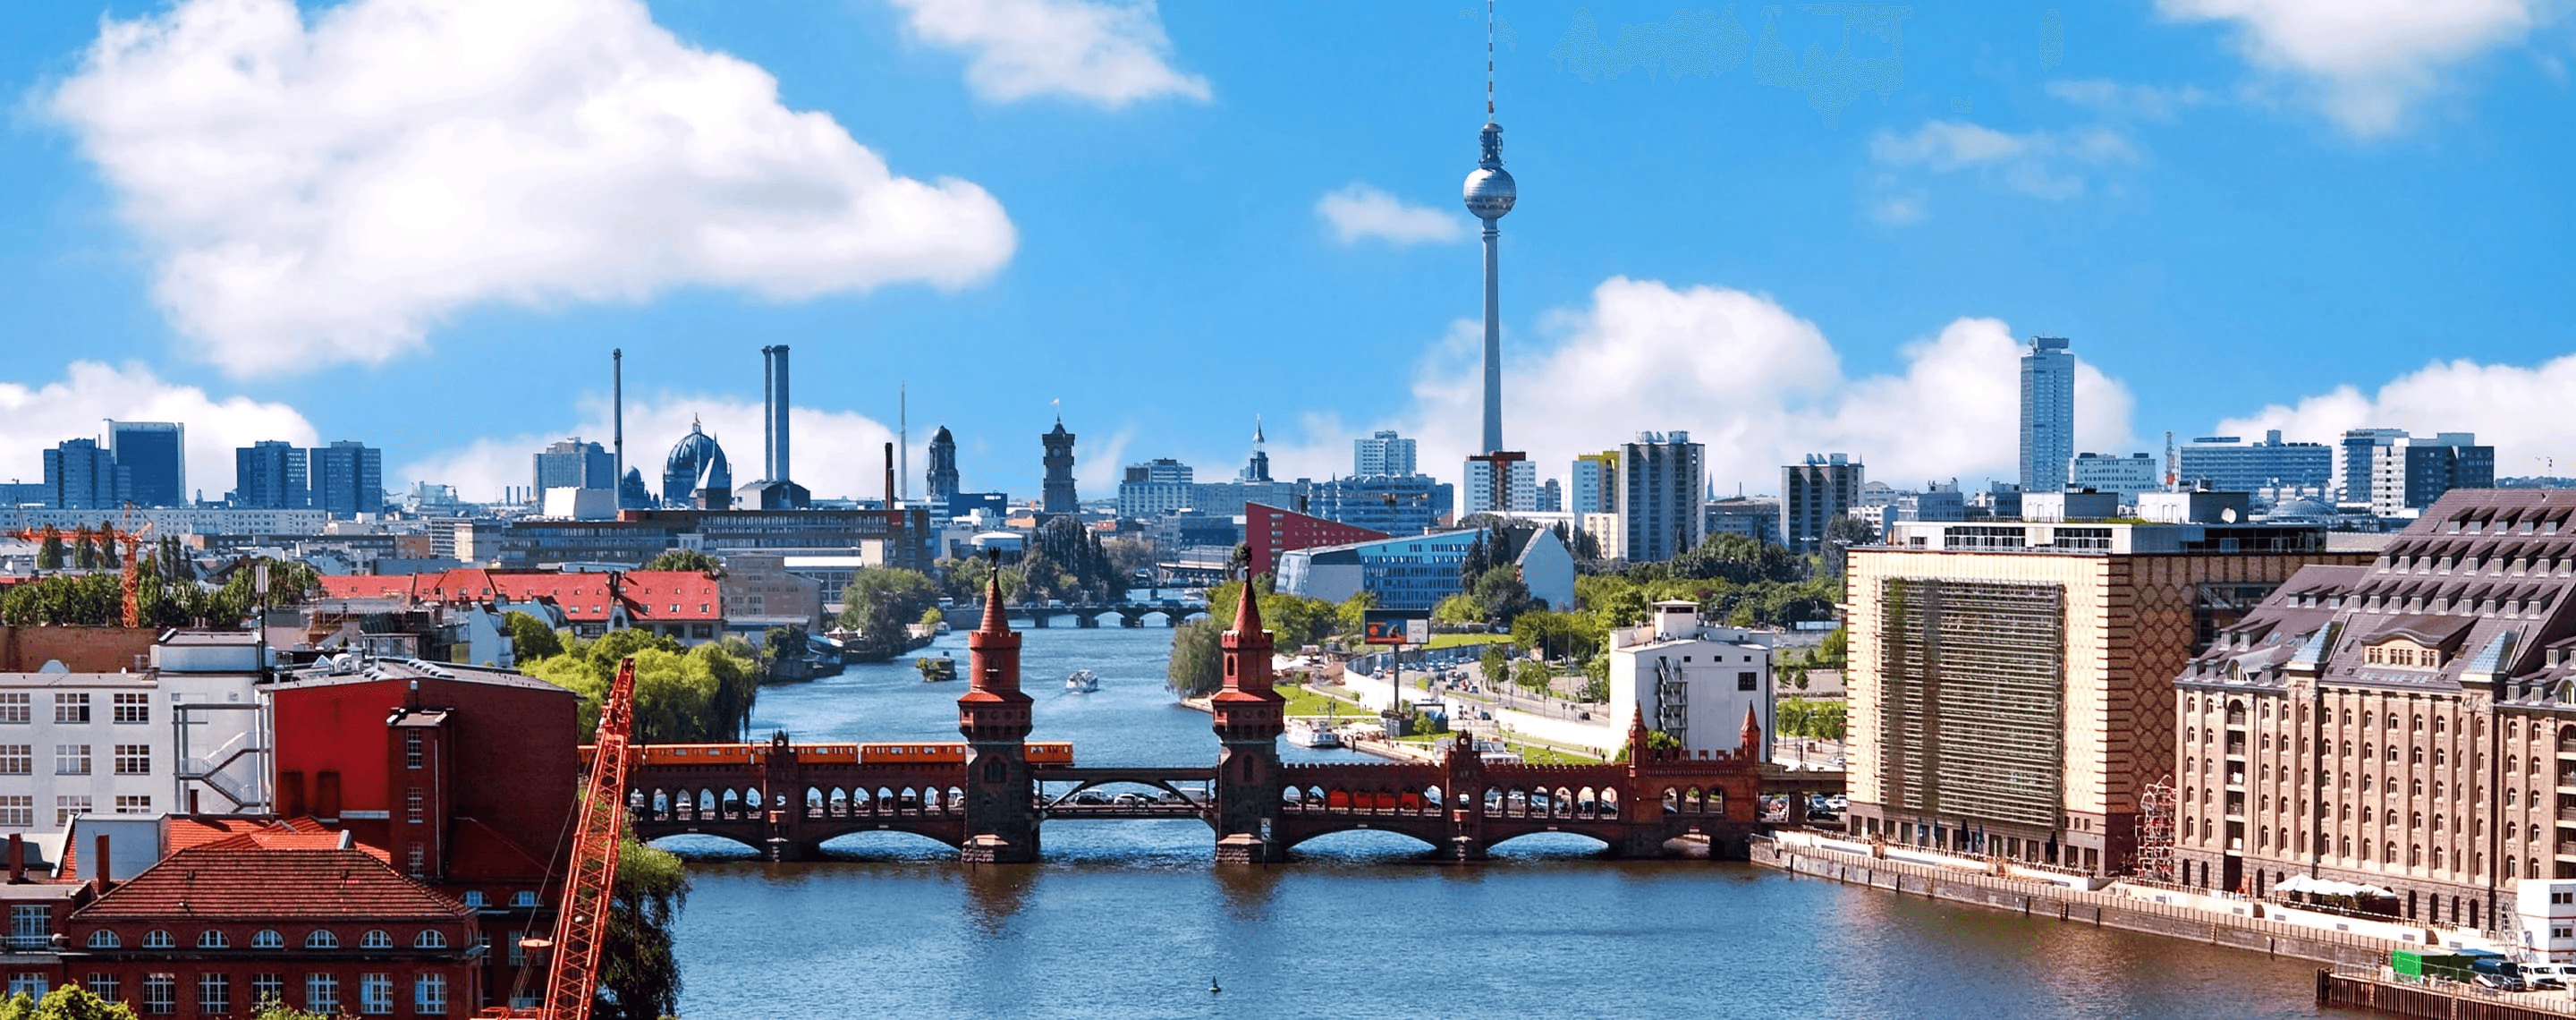 Blick auf die deutsche Hauptstadt Berlin